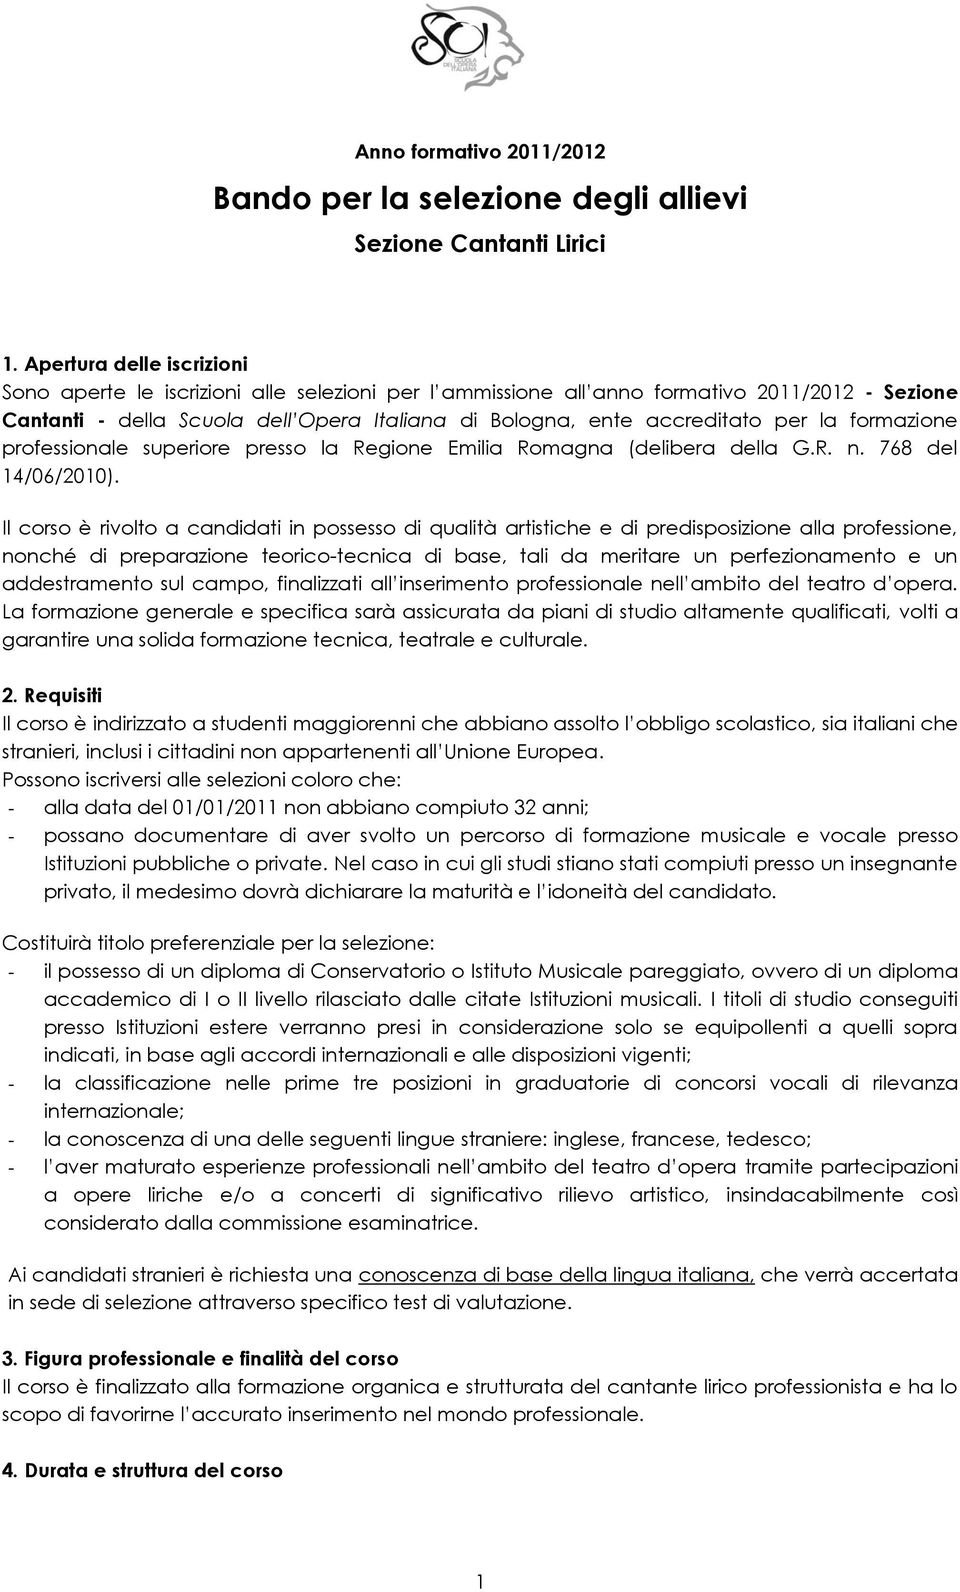 la formazione professionale superiore presso la Regione Emilia Romagna (delibera della G.R. n. 768 del 14/06/2010).